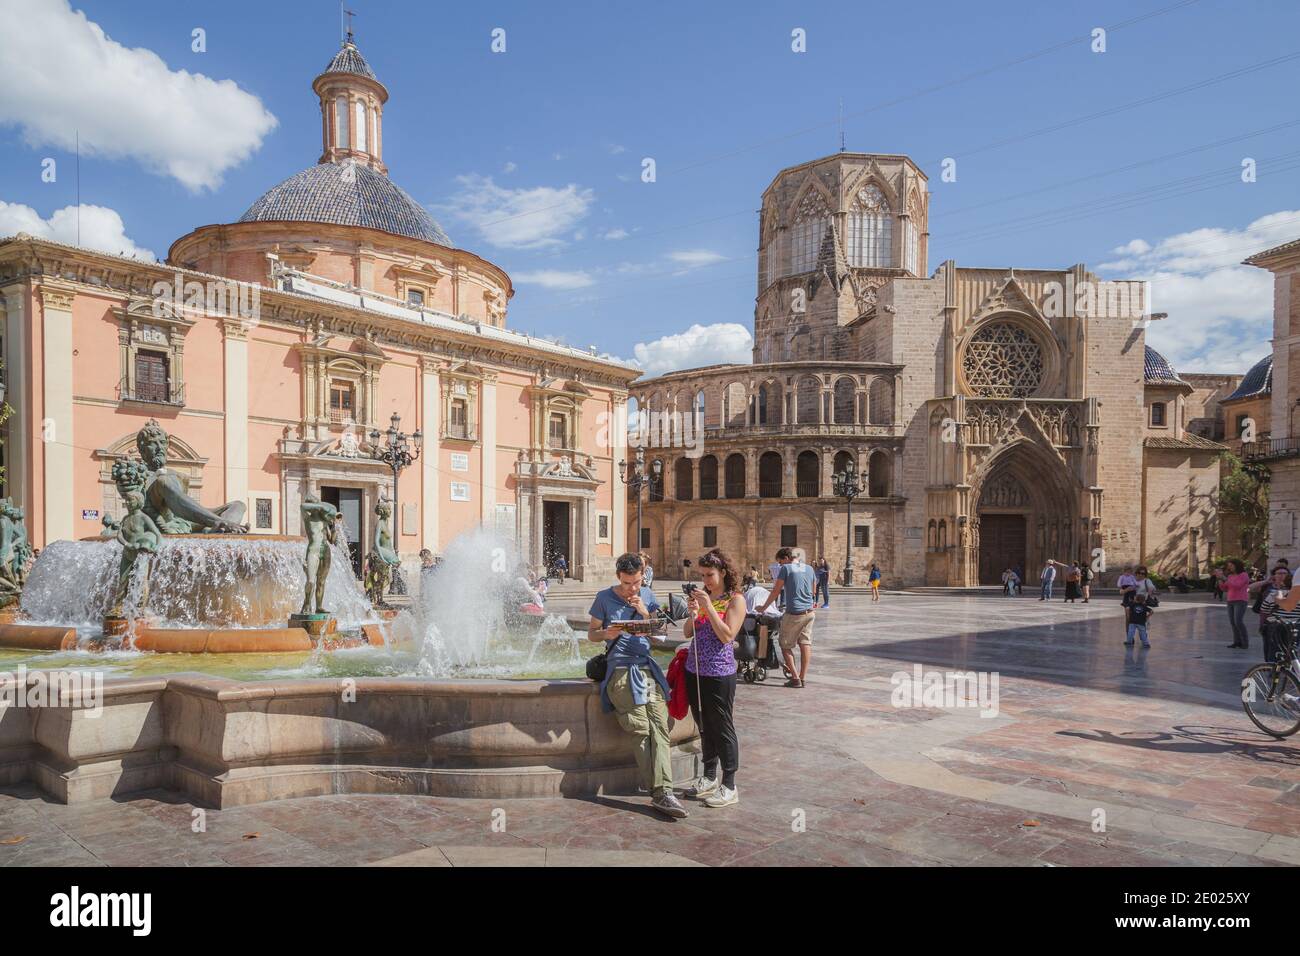 Valencia, Spanien - April 16 2015: Touristen sehen sich eine Karte an und genießen einen sonnigen Tag auf der Plaza de la Virgen, dem historischen Hauptplatz von Valencia, Spanien Stockfoto